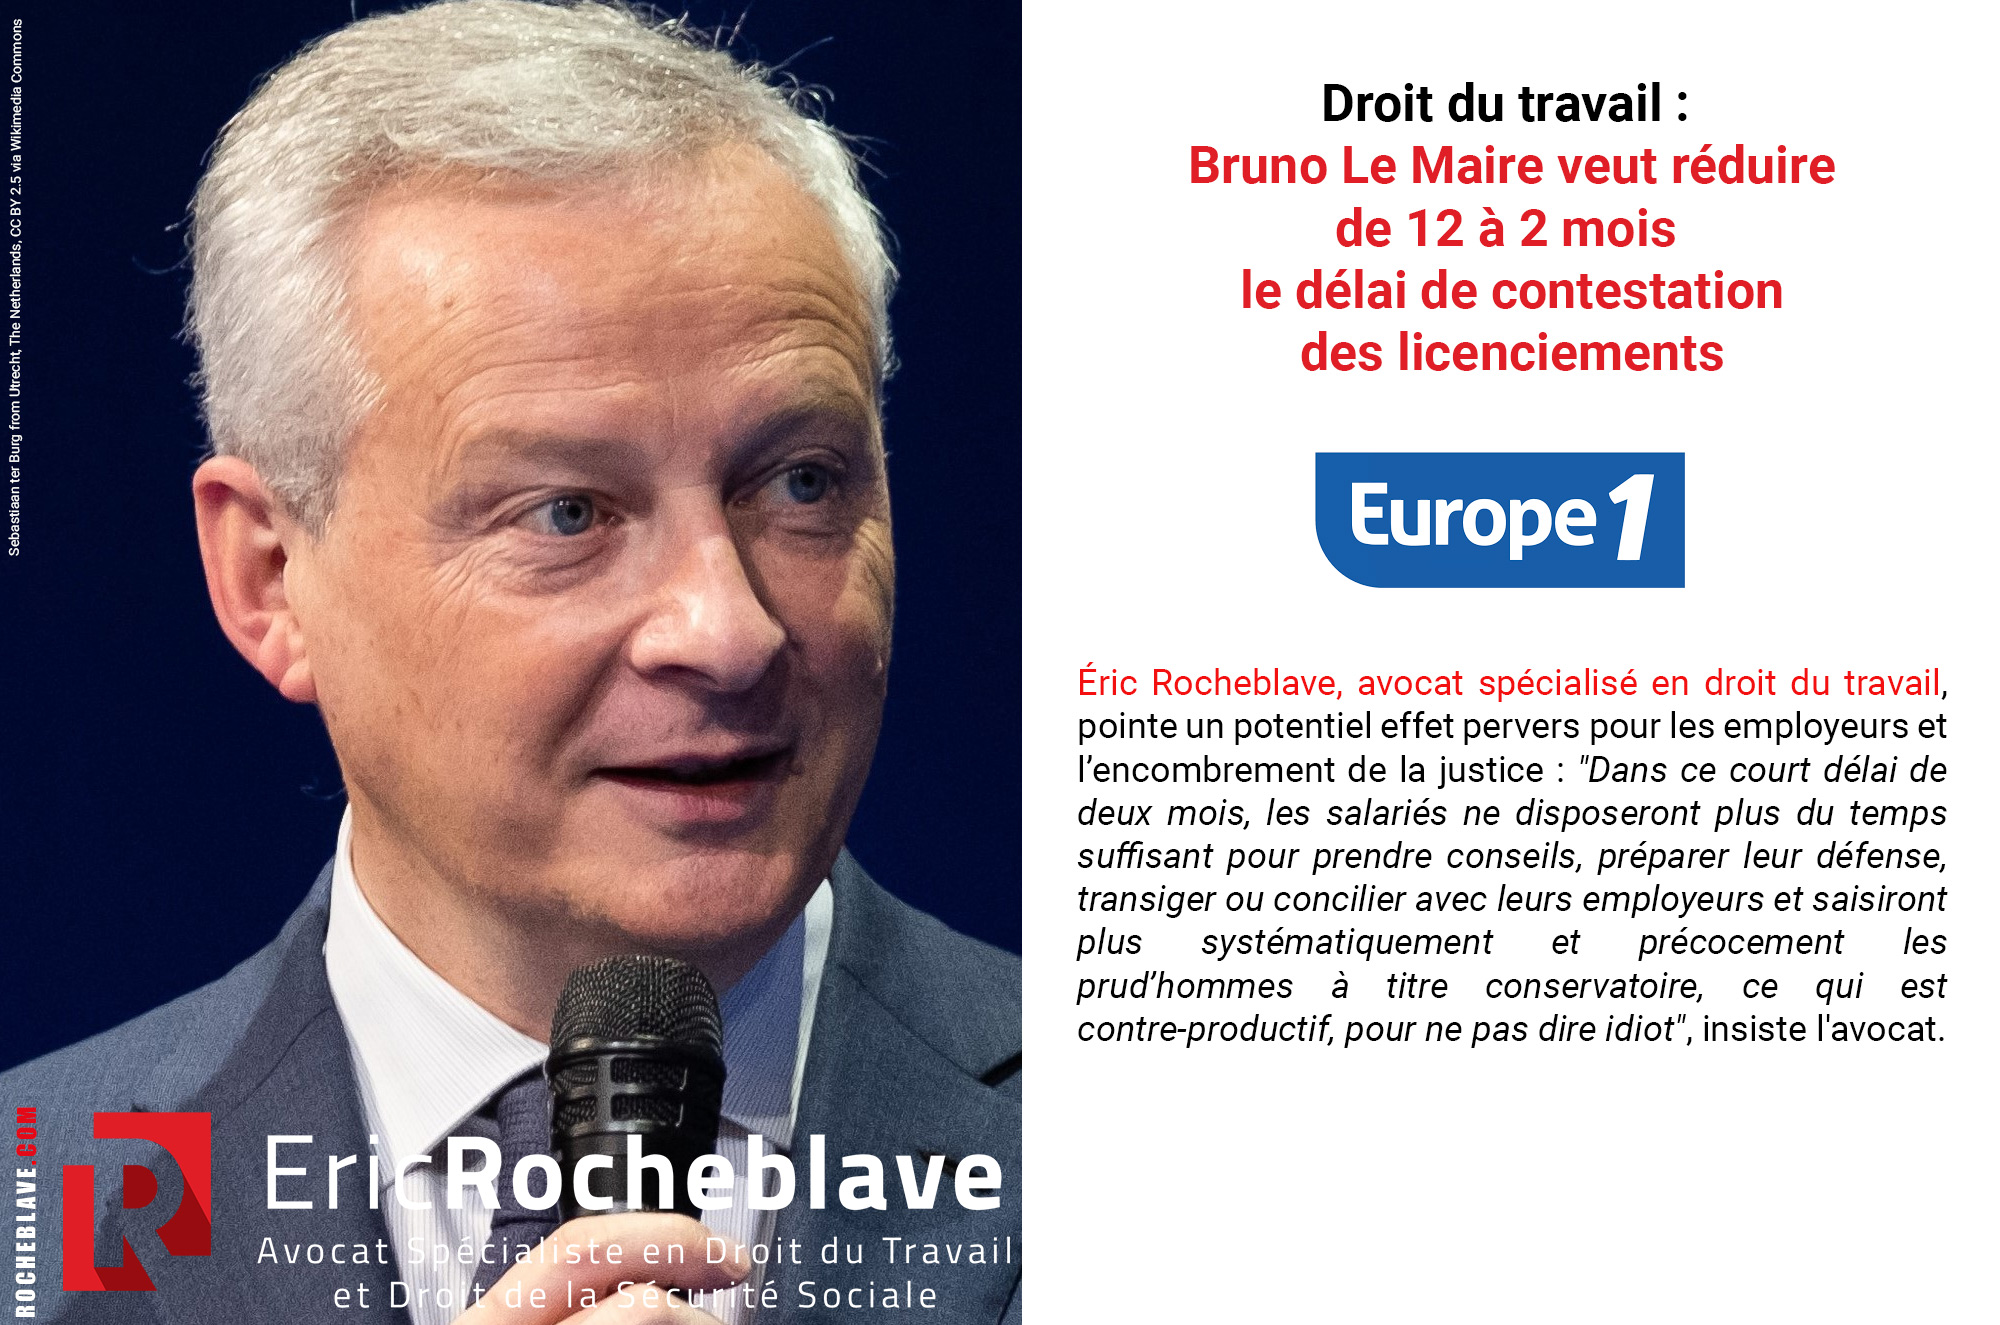 Droit du travail : Bruno Le Maire veut réduire de 12 à 2 mois le délai de contestation des licenciements